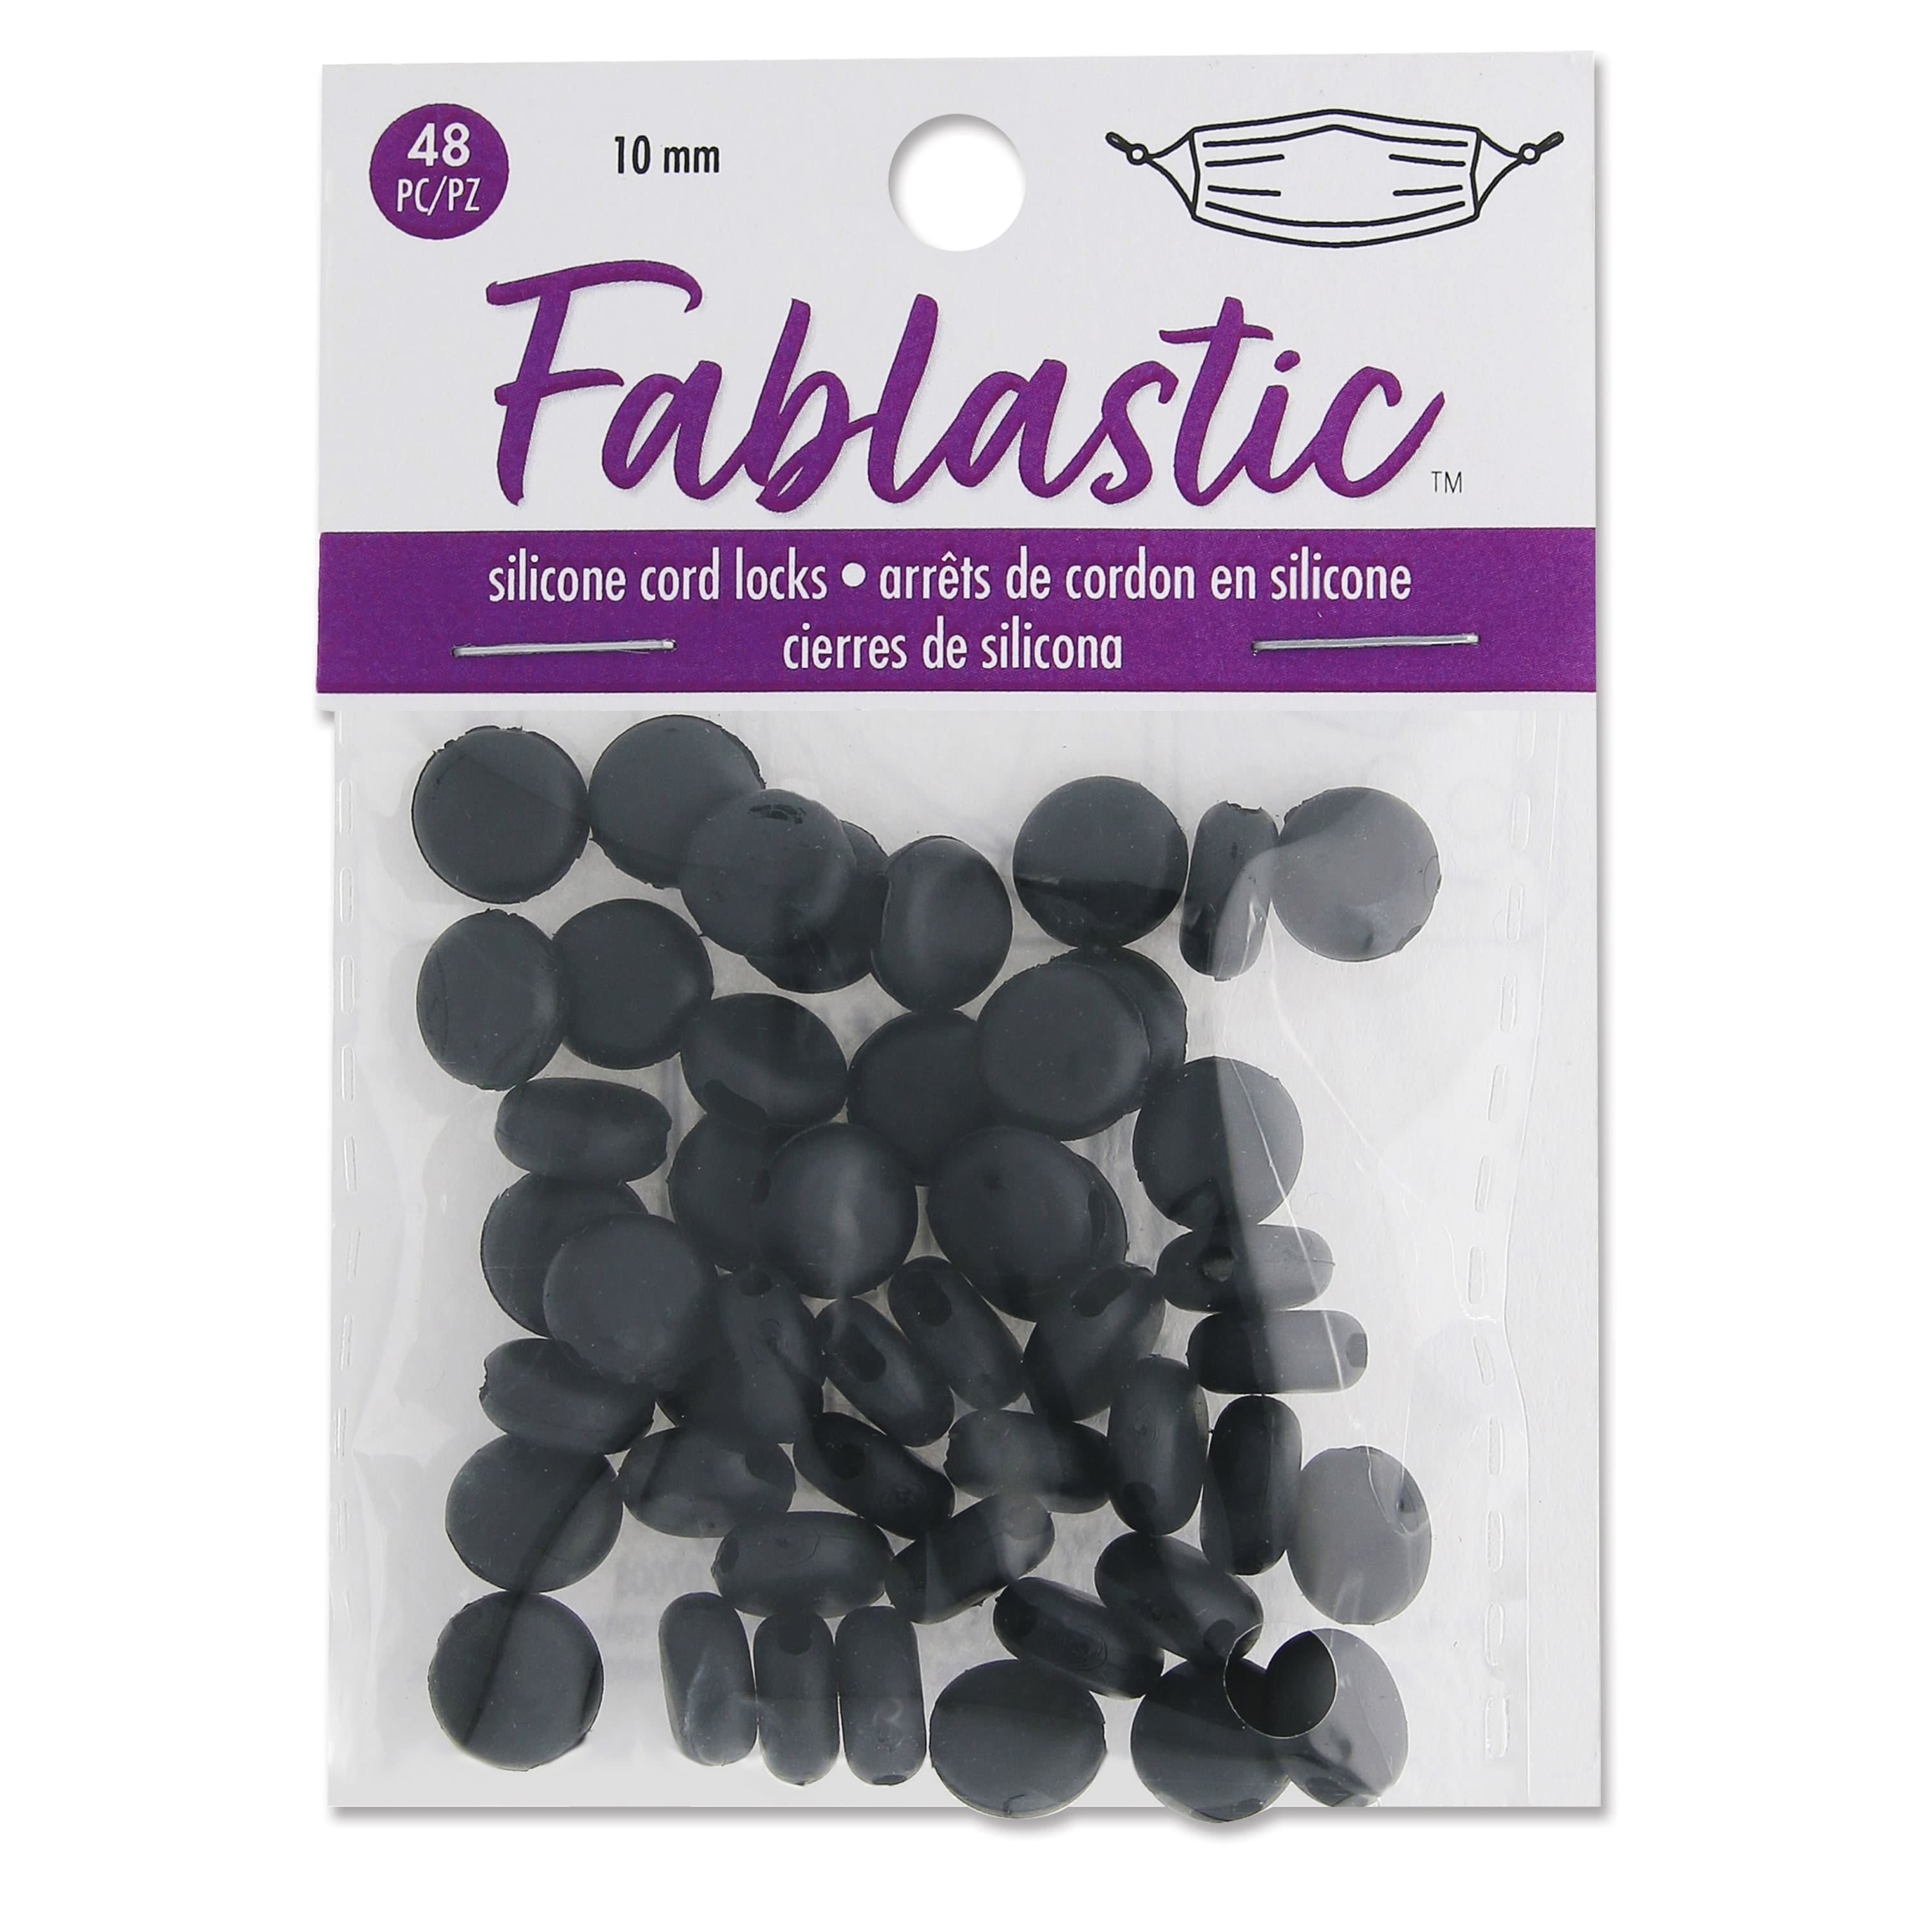 Fablastic™ Black Silicone Cord Locks, 10mm